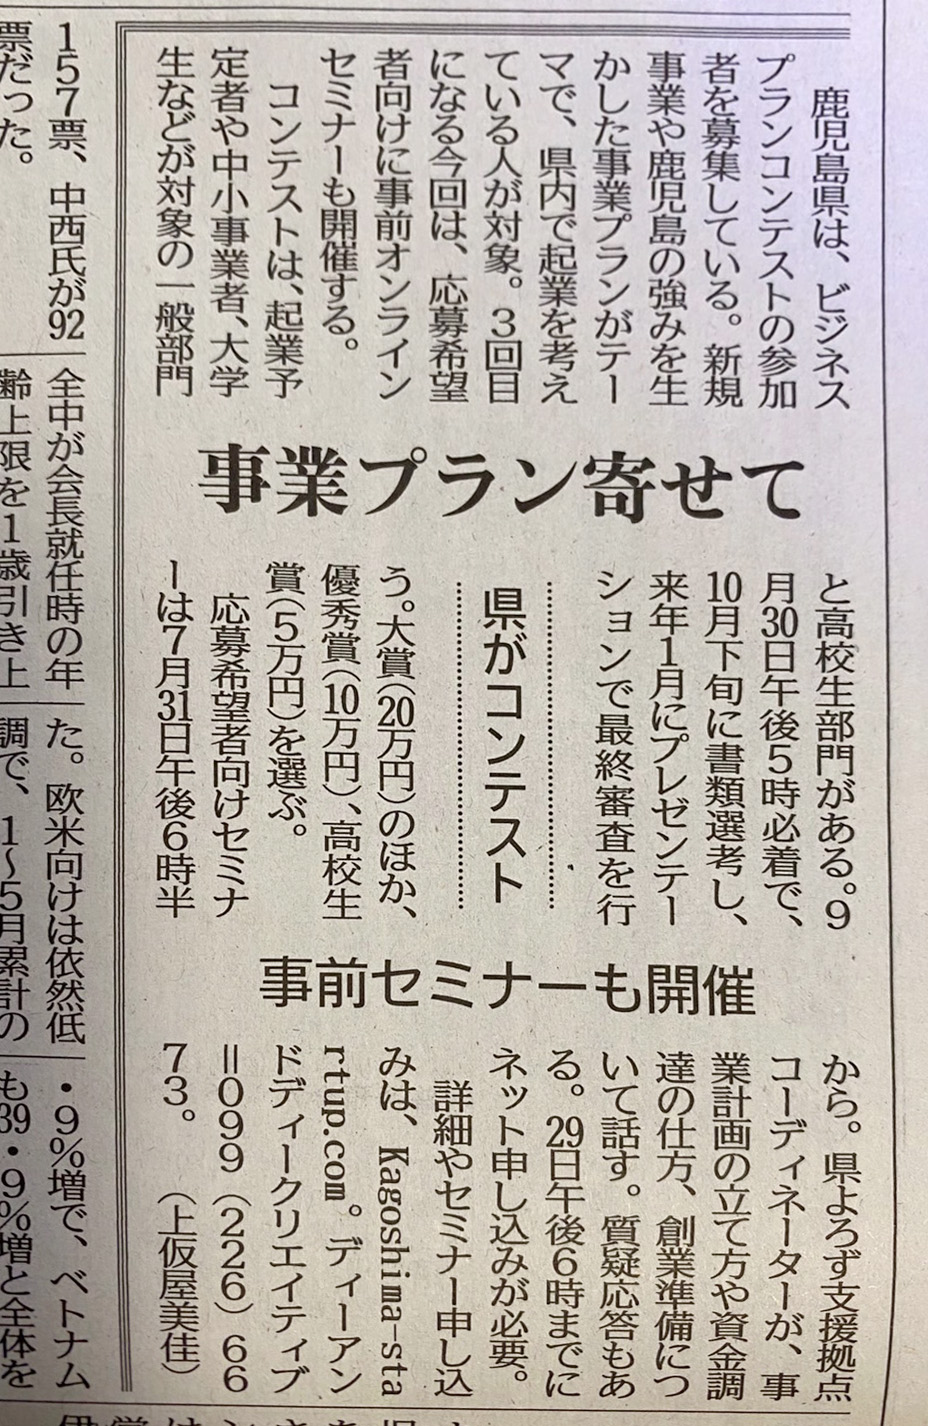 南日本新聞で紹介されました。